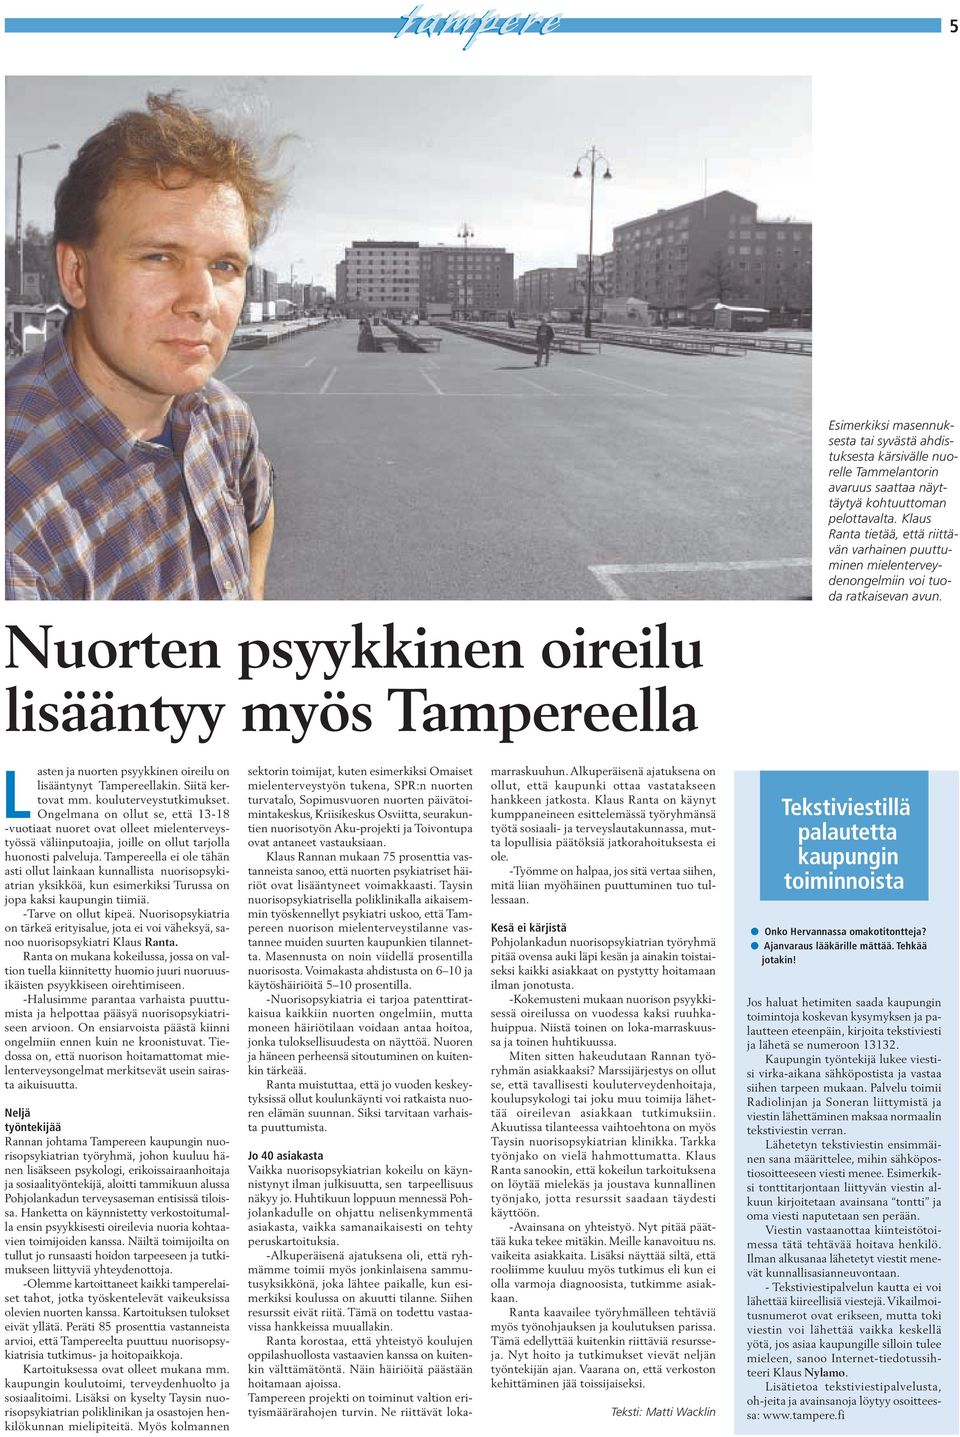 Nuorten psyykkinen oireilu lisääntyy myös Tampereella L Tekstiviestillä palautetta kaupungin toiminnoista asten ja nuorten psyykkinen oireilu on lisääntynyt Tampereellakin. Siitä kertovat mm.